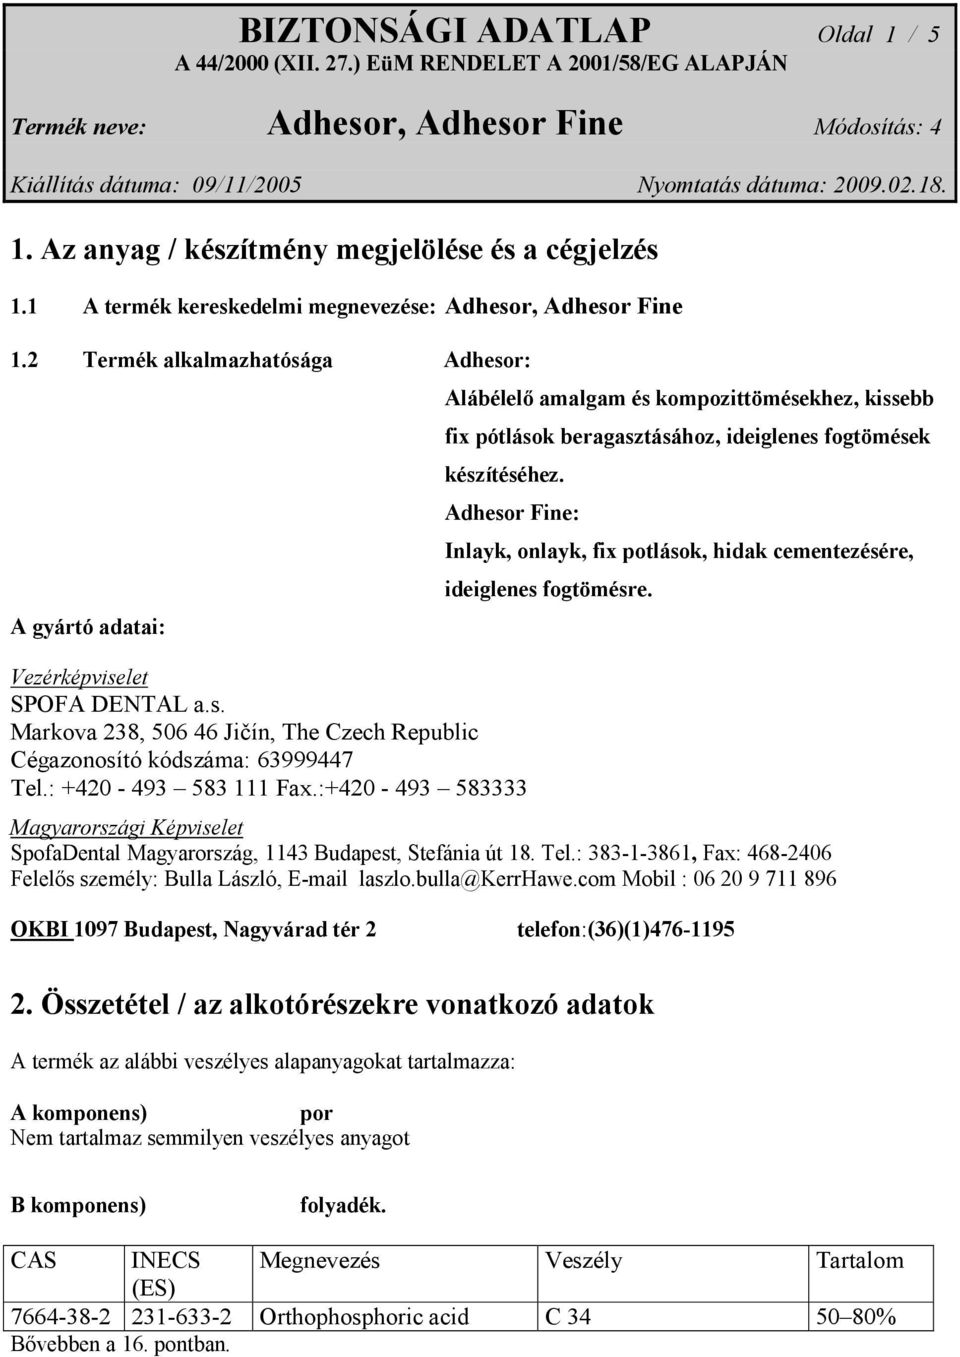 Adhesor Fine: Vezérképviselet SPOFA DENTAL a.s. Markova 238, 506 46 Jičín, The Czech Republic Cégazonosító kódszáma: 63999447 Tel.: +420-493 583 111 Fax.